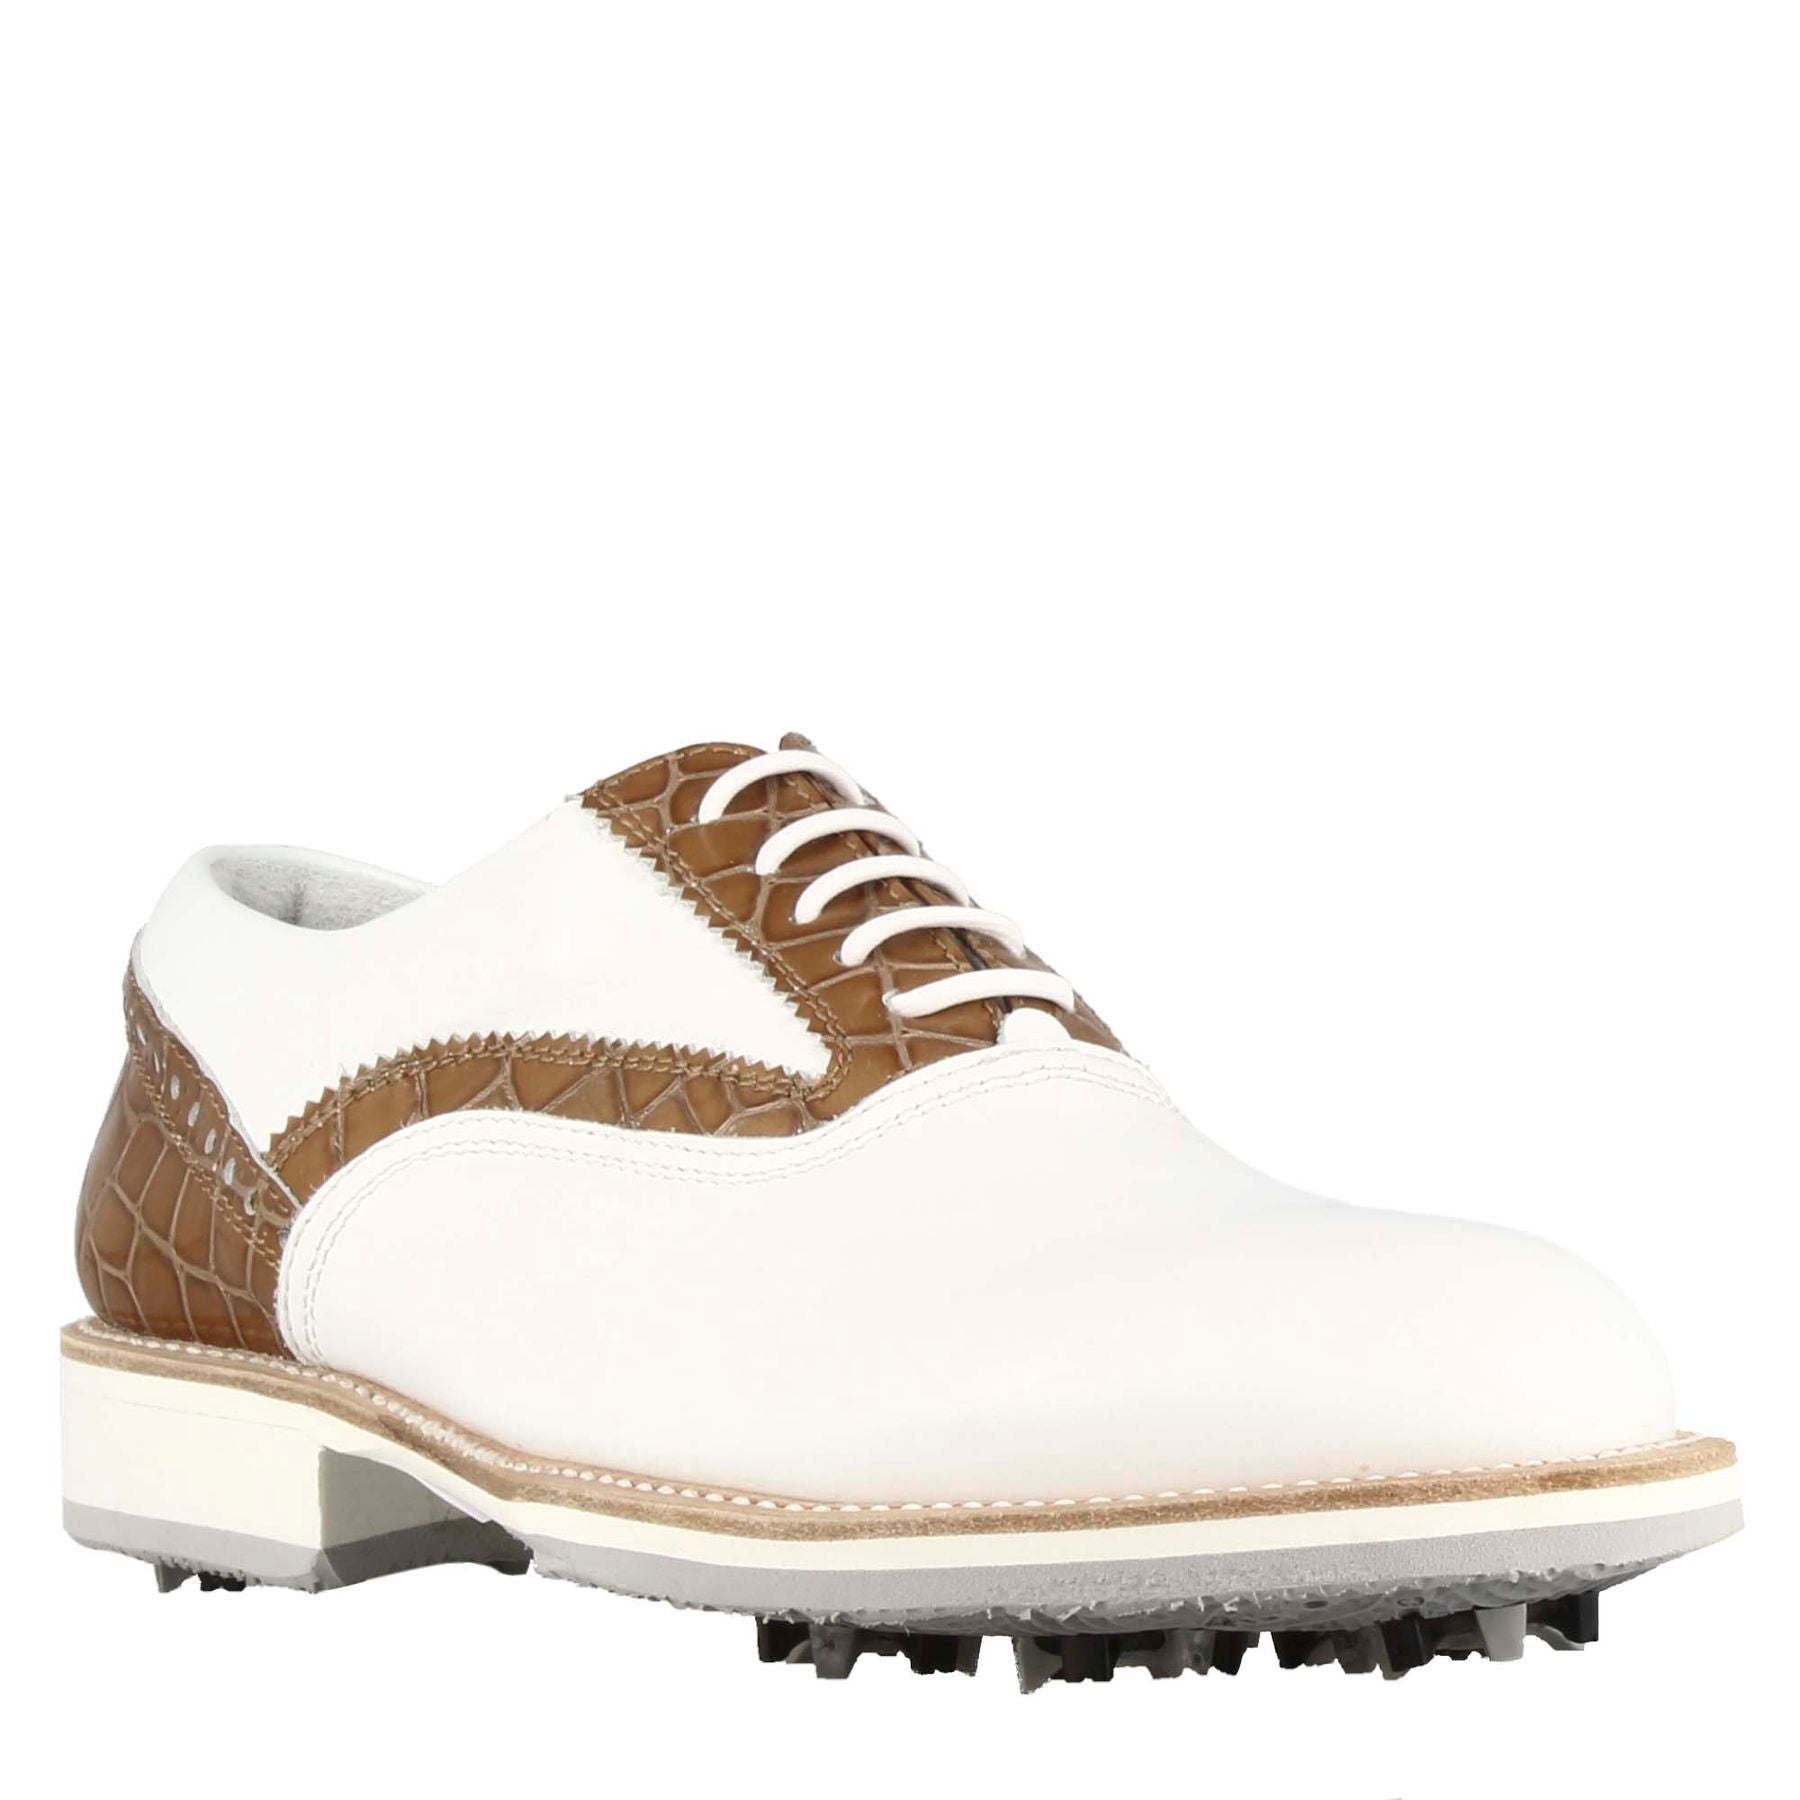 Chaussures de golf pour femmes fabriquées à la main en cuir blanc avec détails marron clair